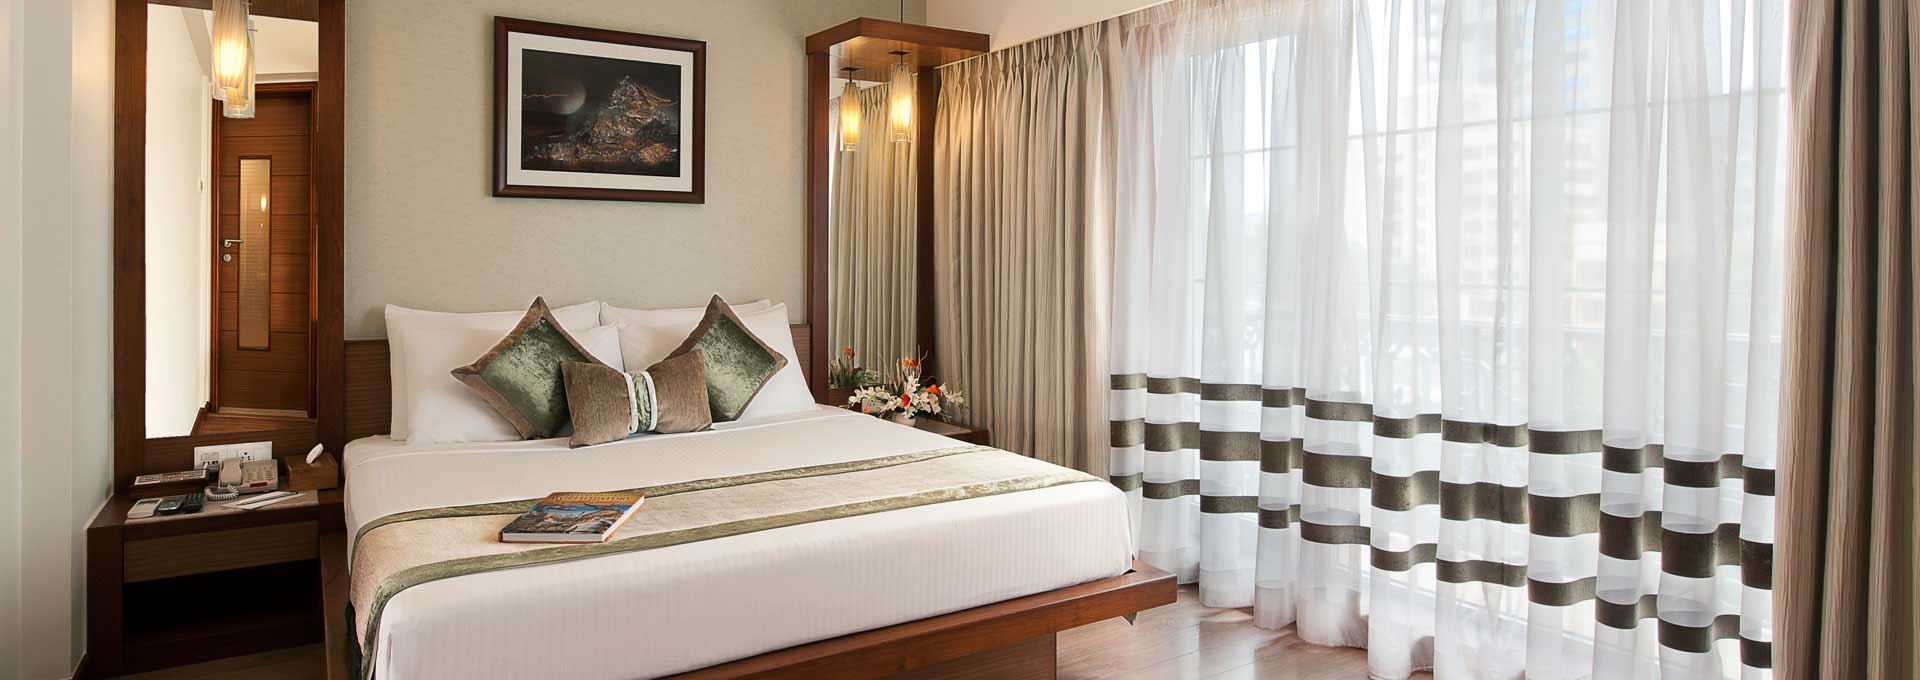 Bed & Breakfast Hotels in Bandra